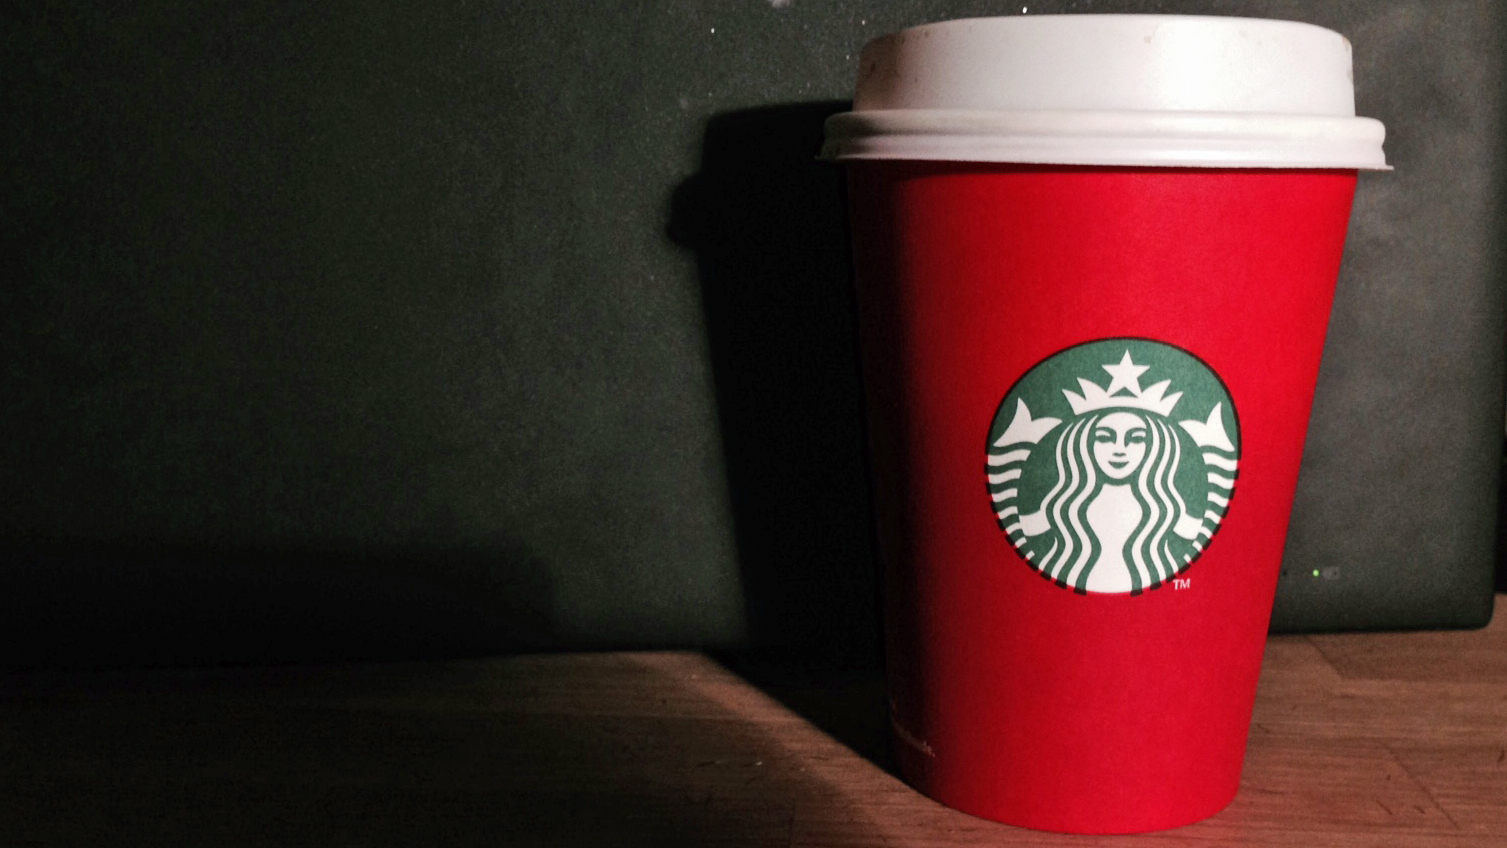 Drit nå i hvordan julekoppene til Starbucks ser ut!